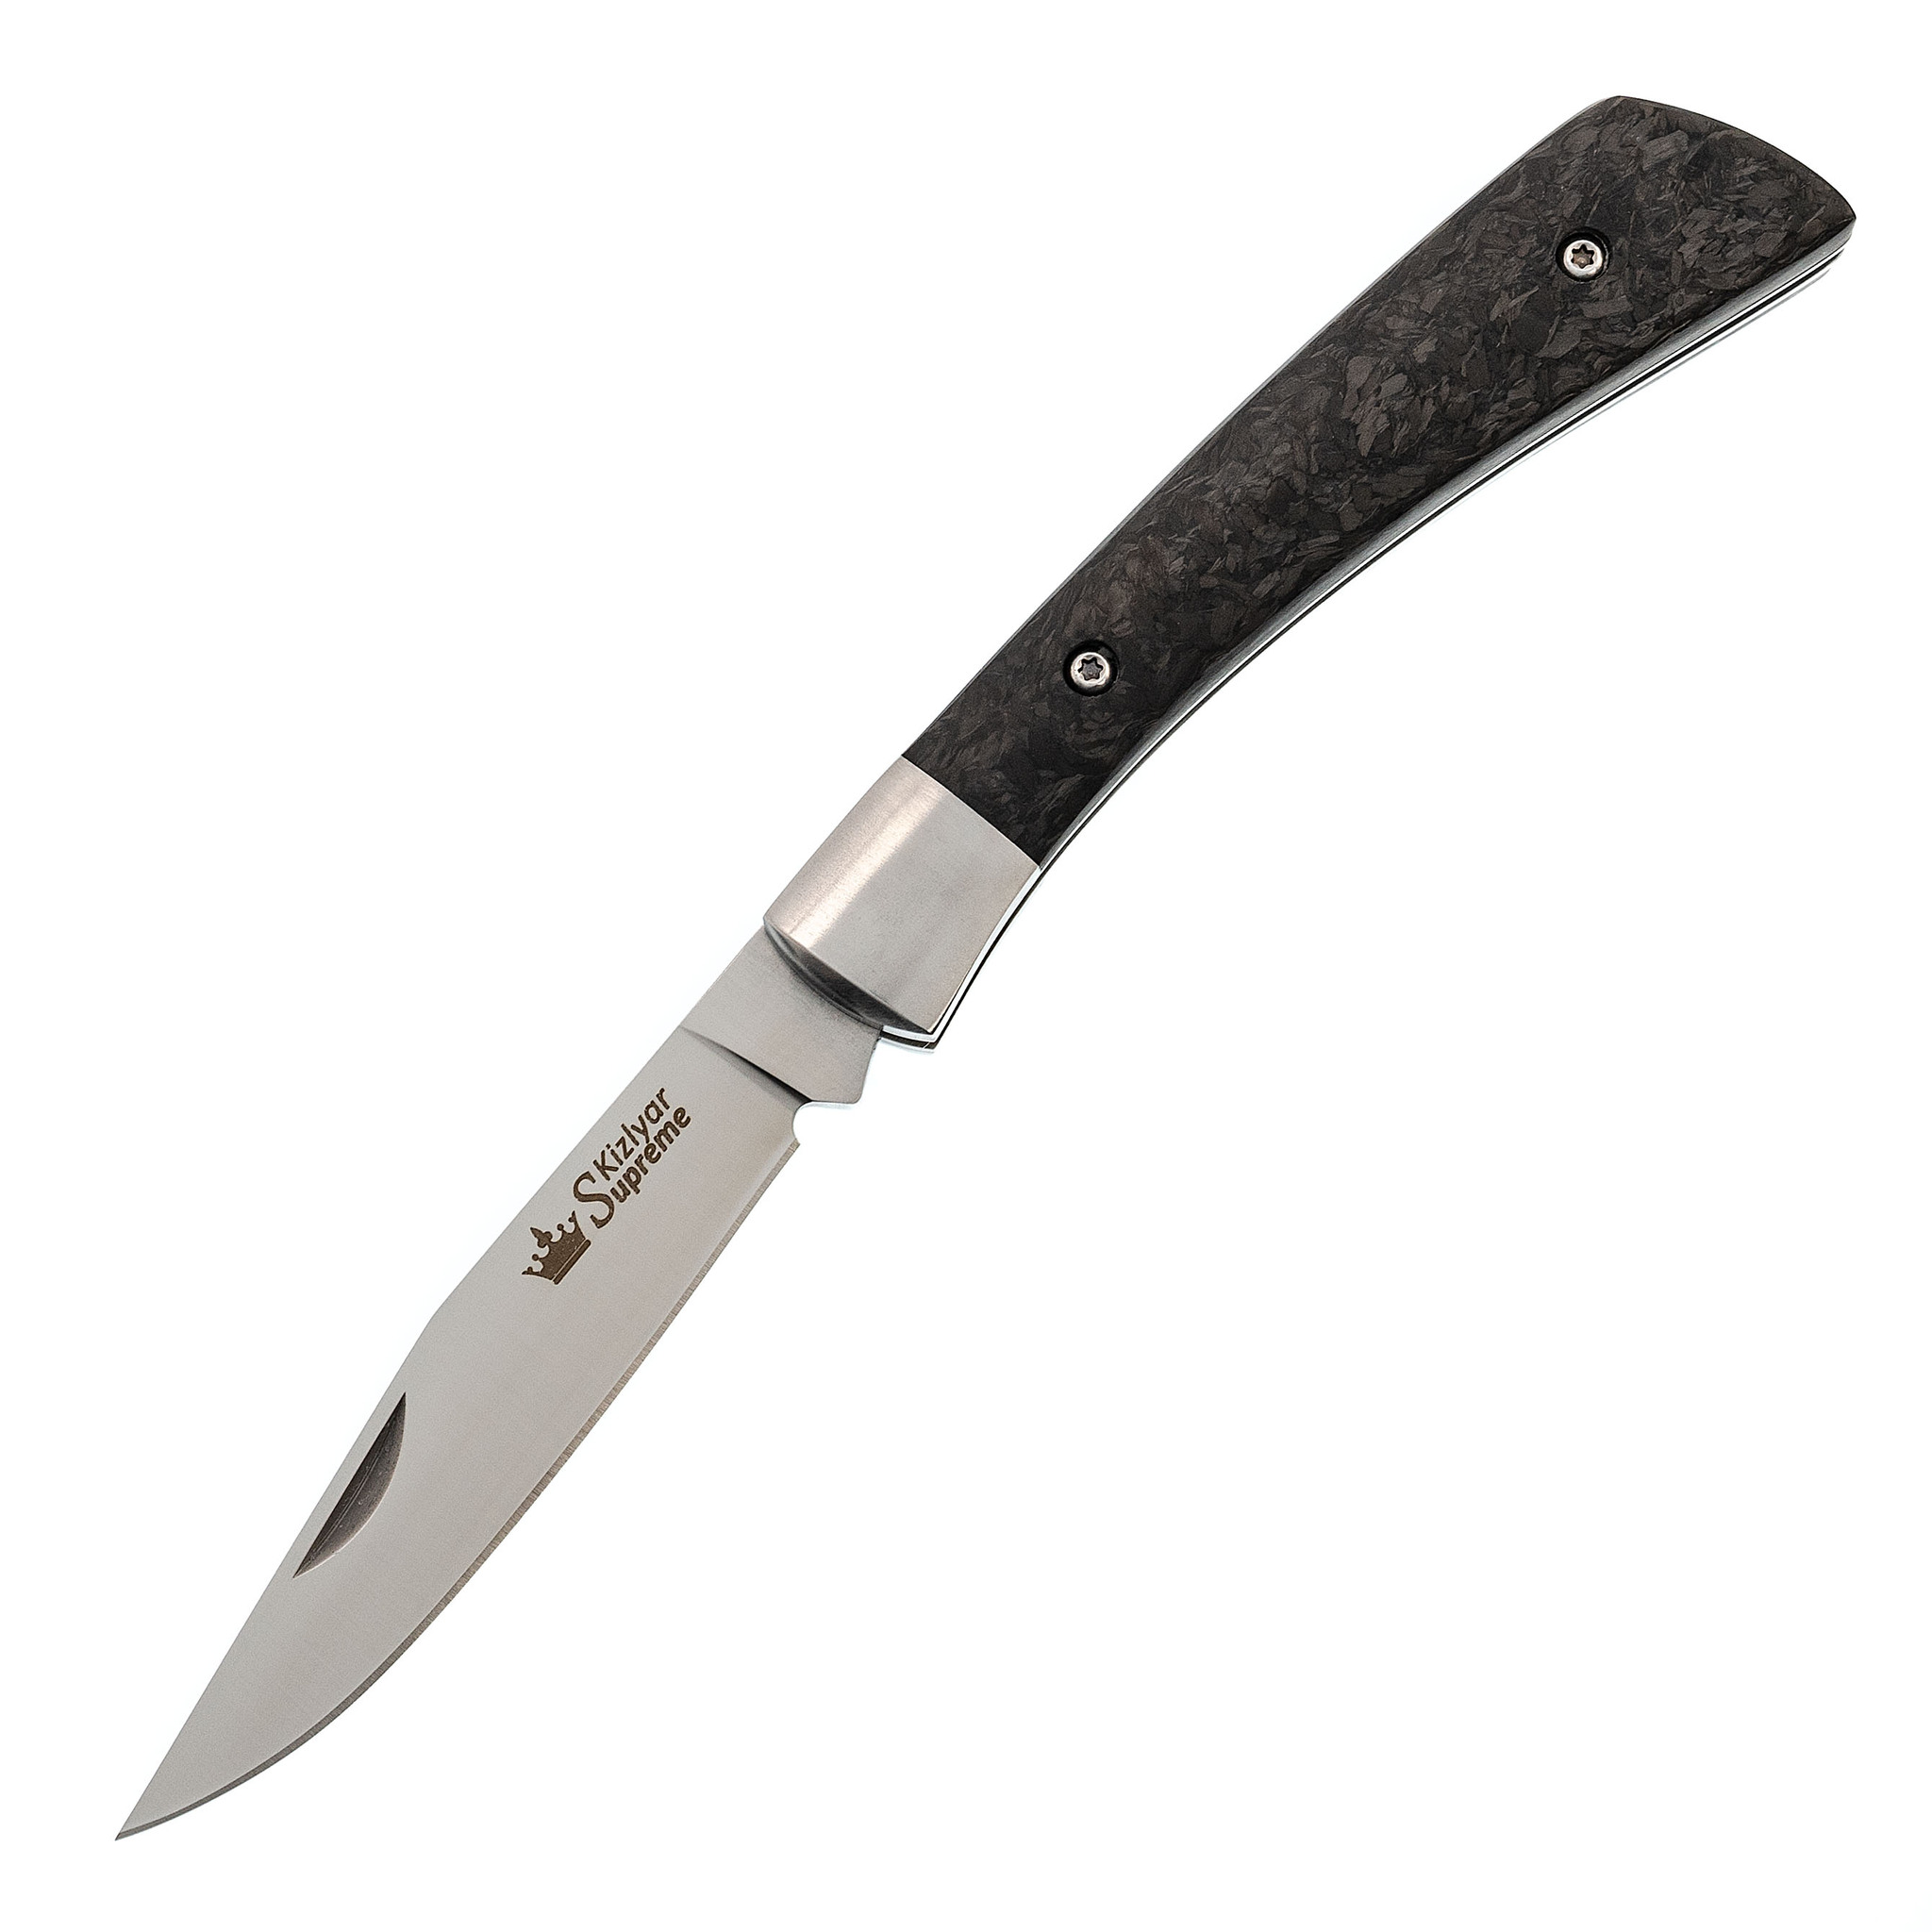 Складной нож Gent D2 S, Kizlyar Supreme складной нож gent 440c s kizlyar supreme